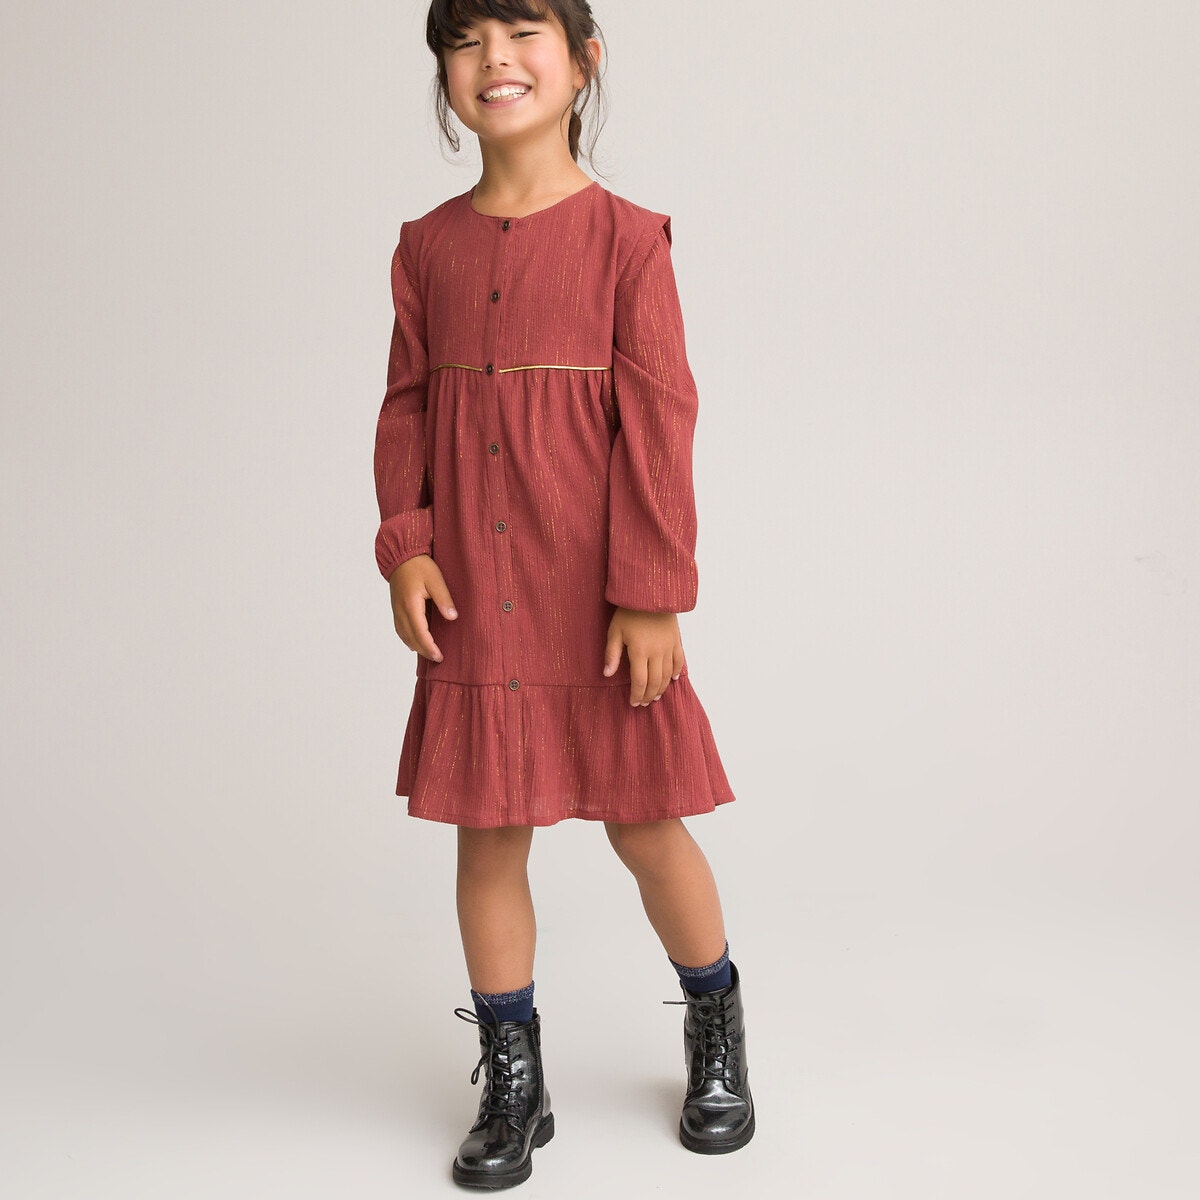 ΠΑΙΔΙ | Φορέματα | Μακριά ή 3/4 μανίκια Φόρεμα από βαμβακερή γάζα, 3-12 ετών